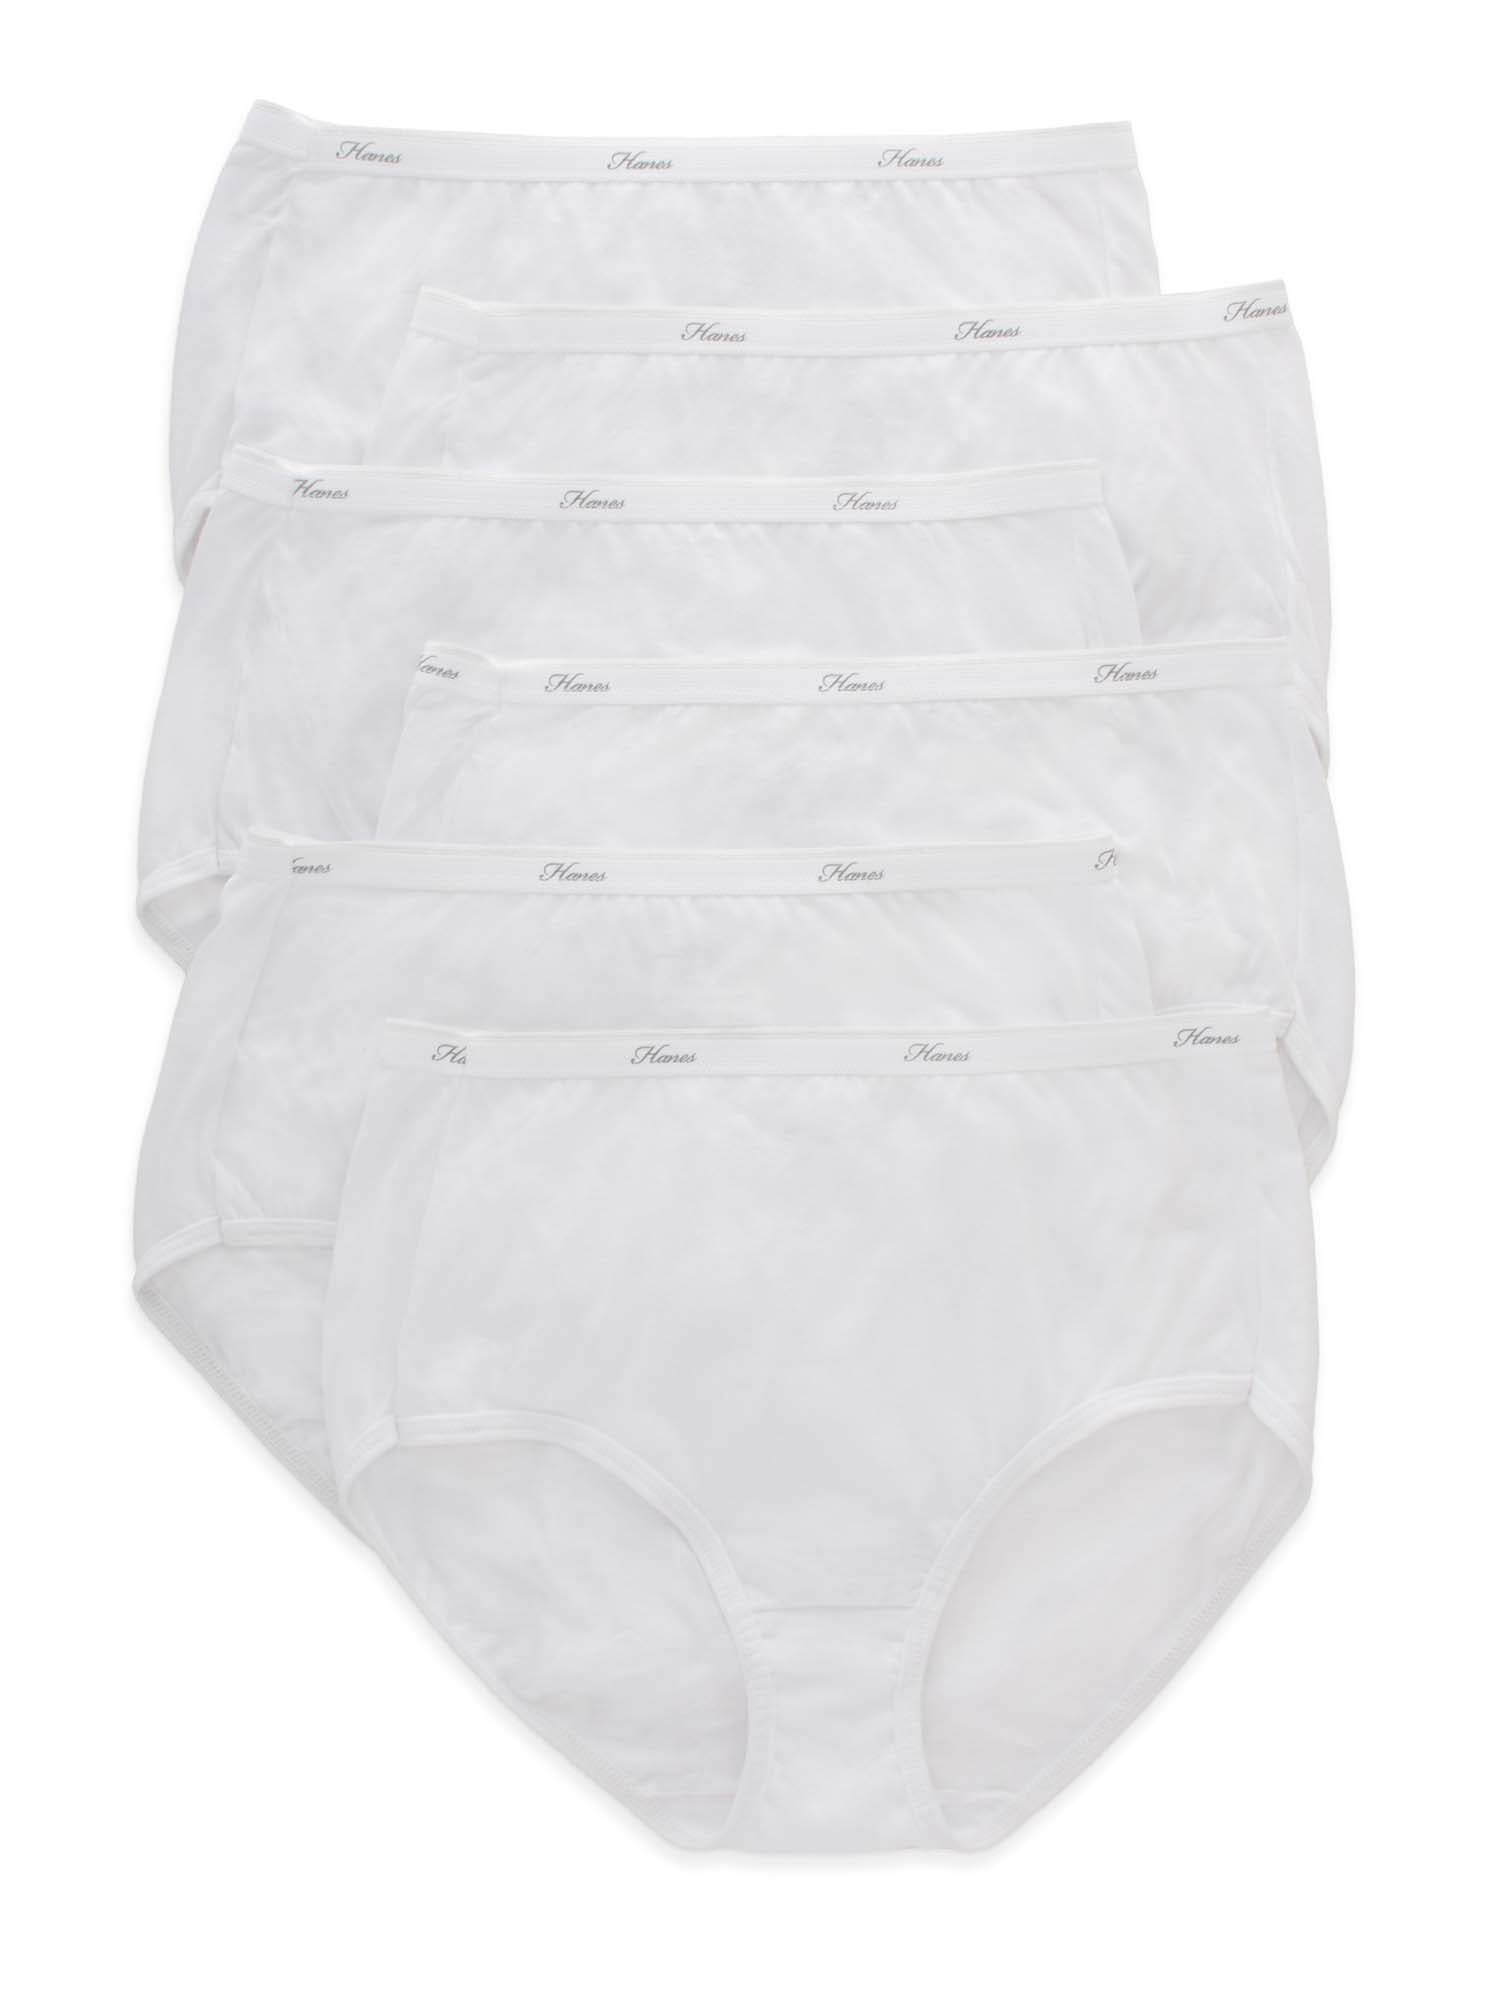 Hanes womens Cotton briefs underwear, 6 Pack - Brief White, 8 US 